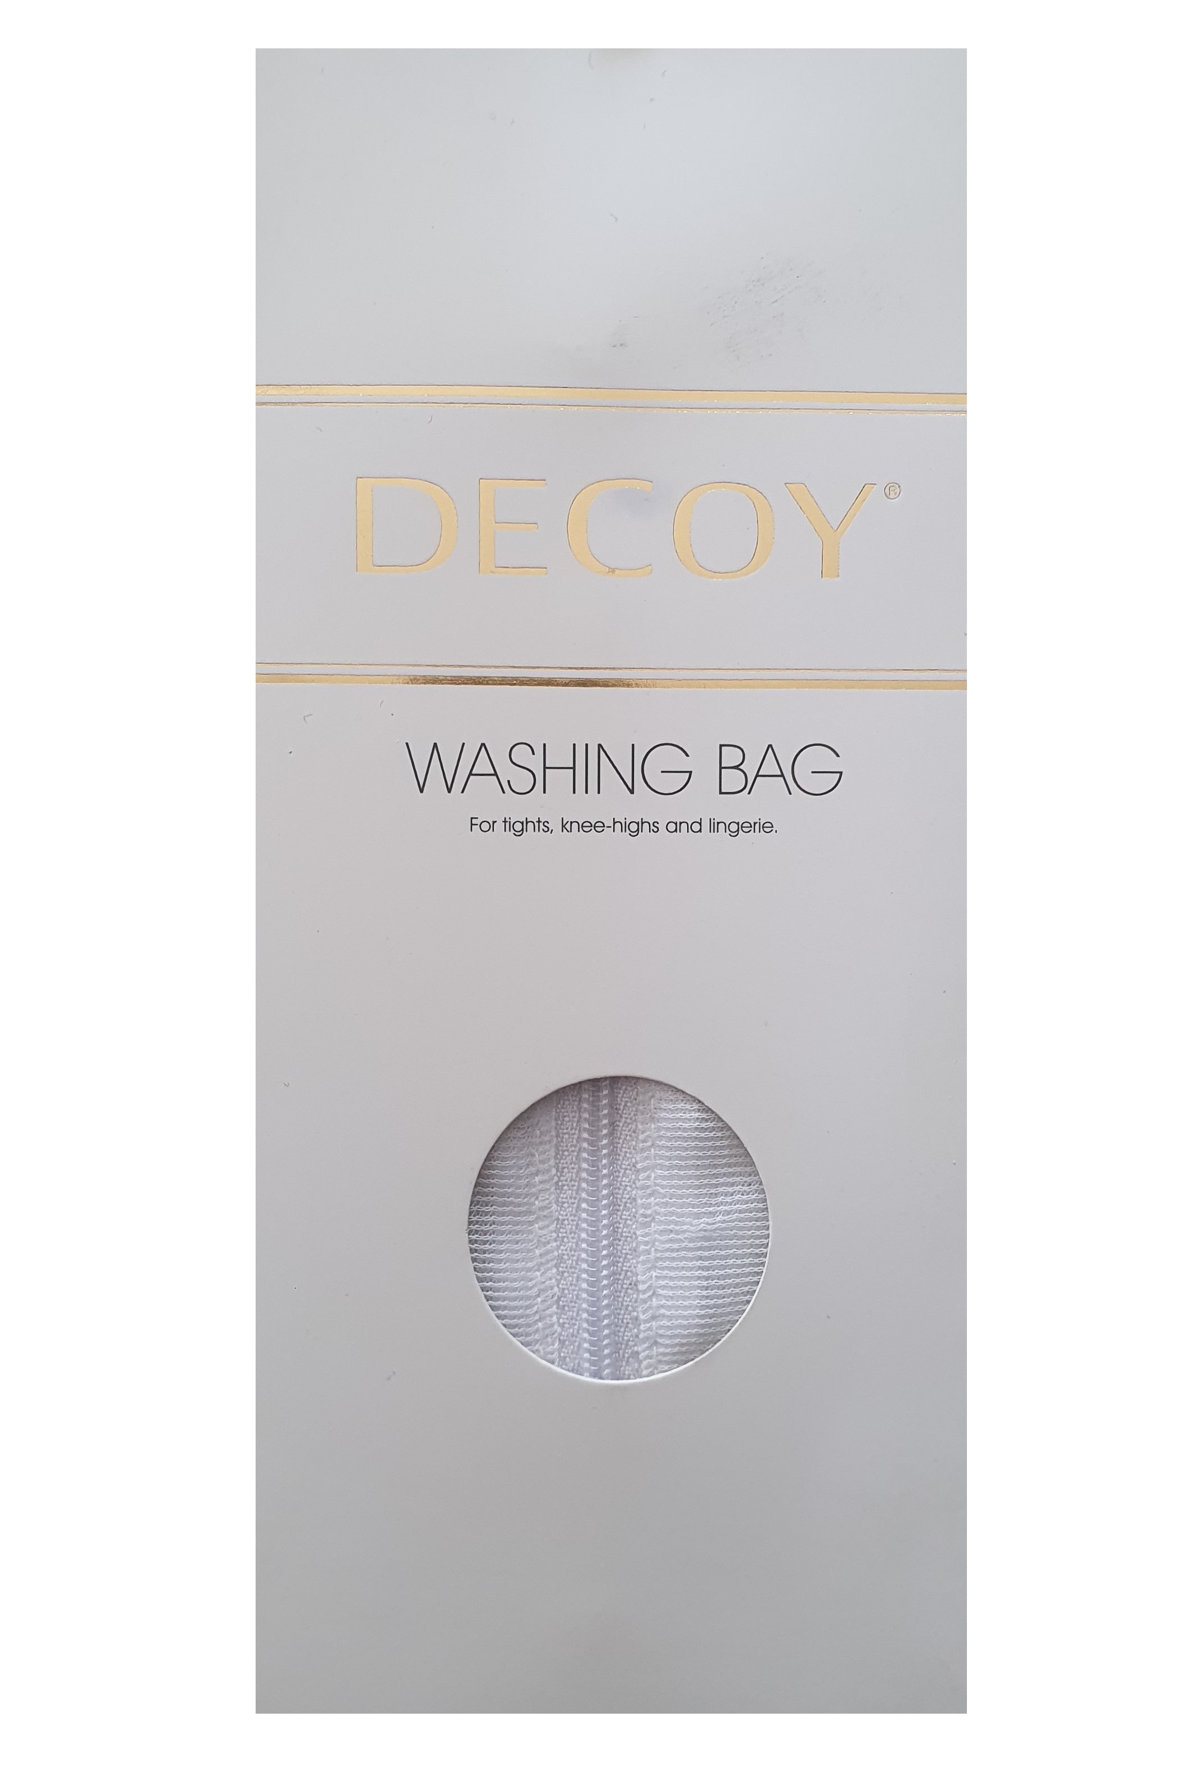 Decoy hvid vaskepose til hvidt sort og tøj tåler 60 gr - Hos Lohse